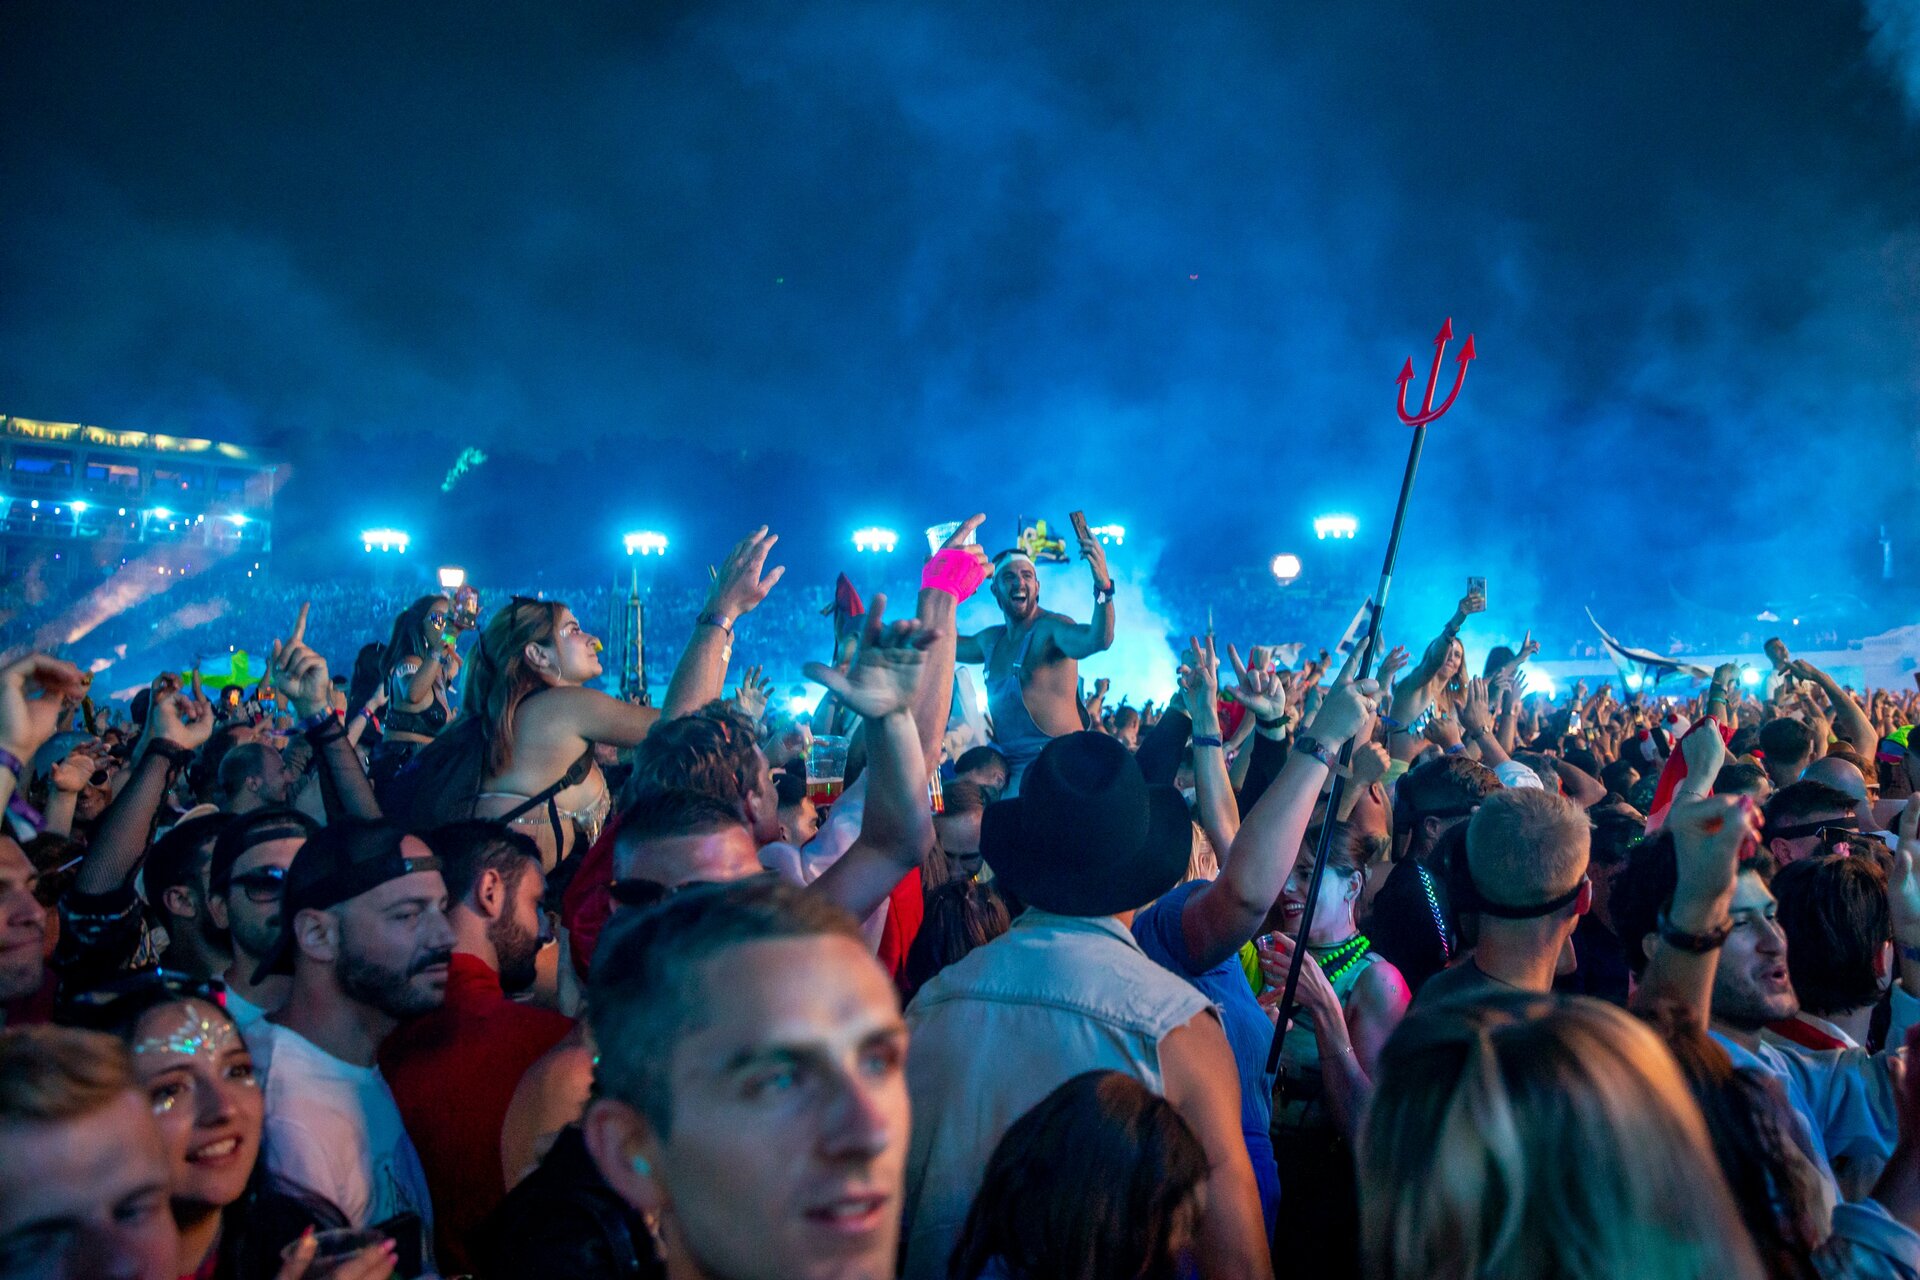 Arrestan a 37 personas por tráfico de drogas en festival Tomorrowland